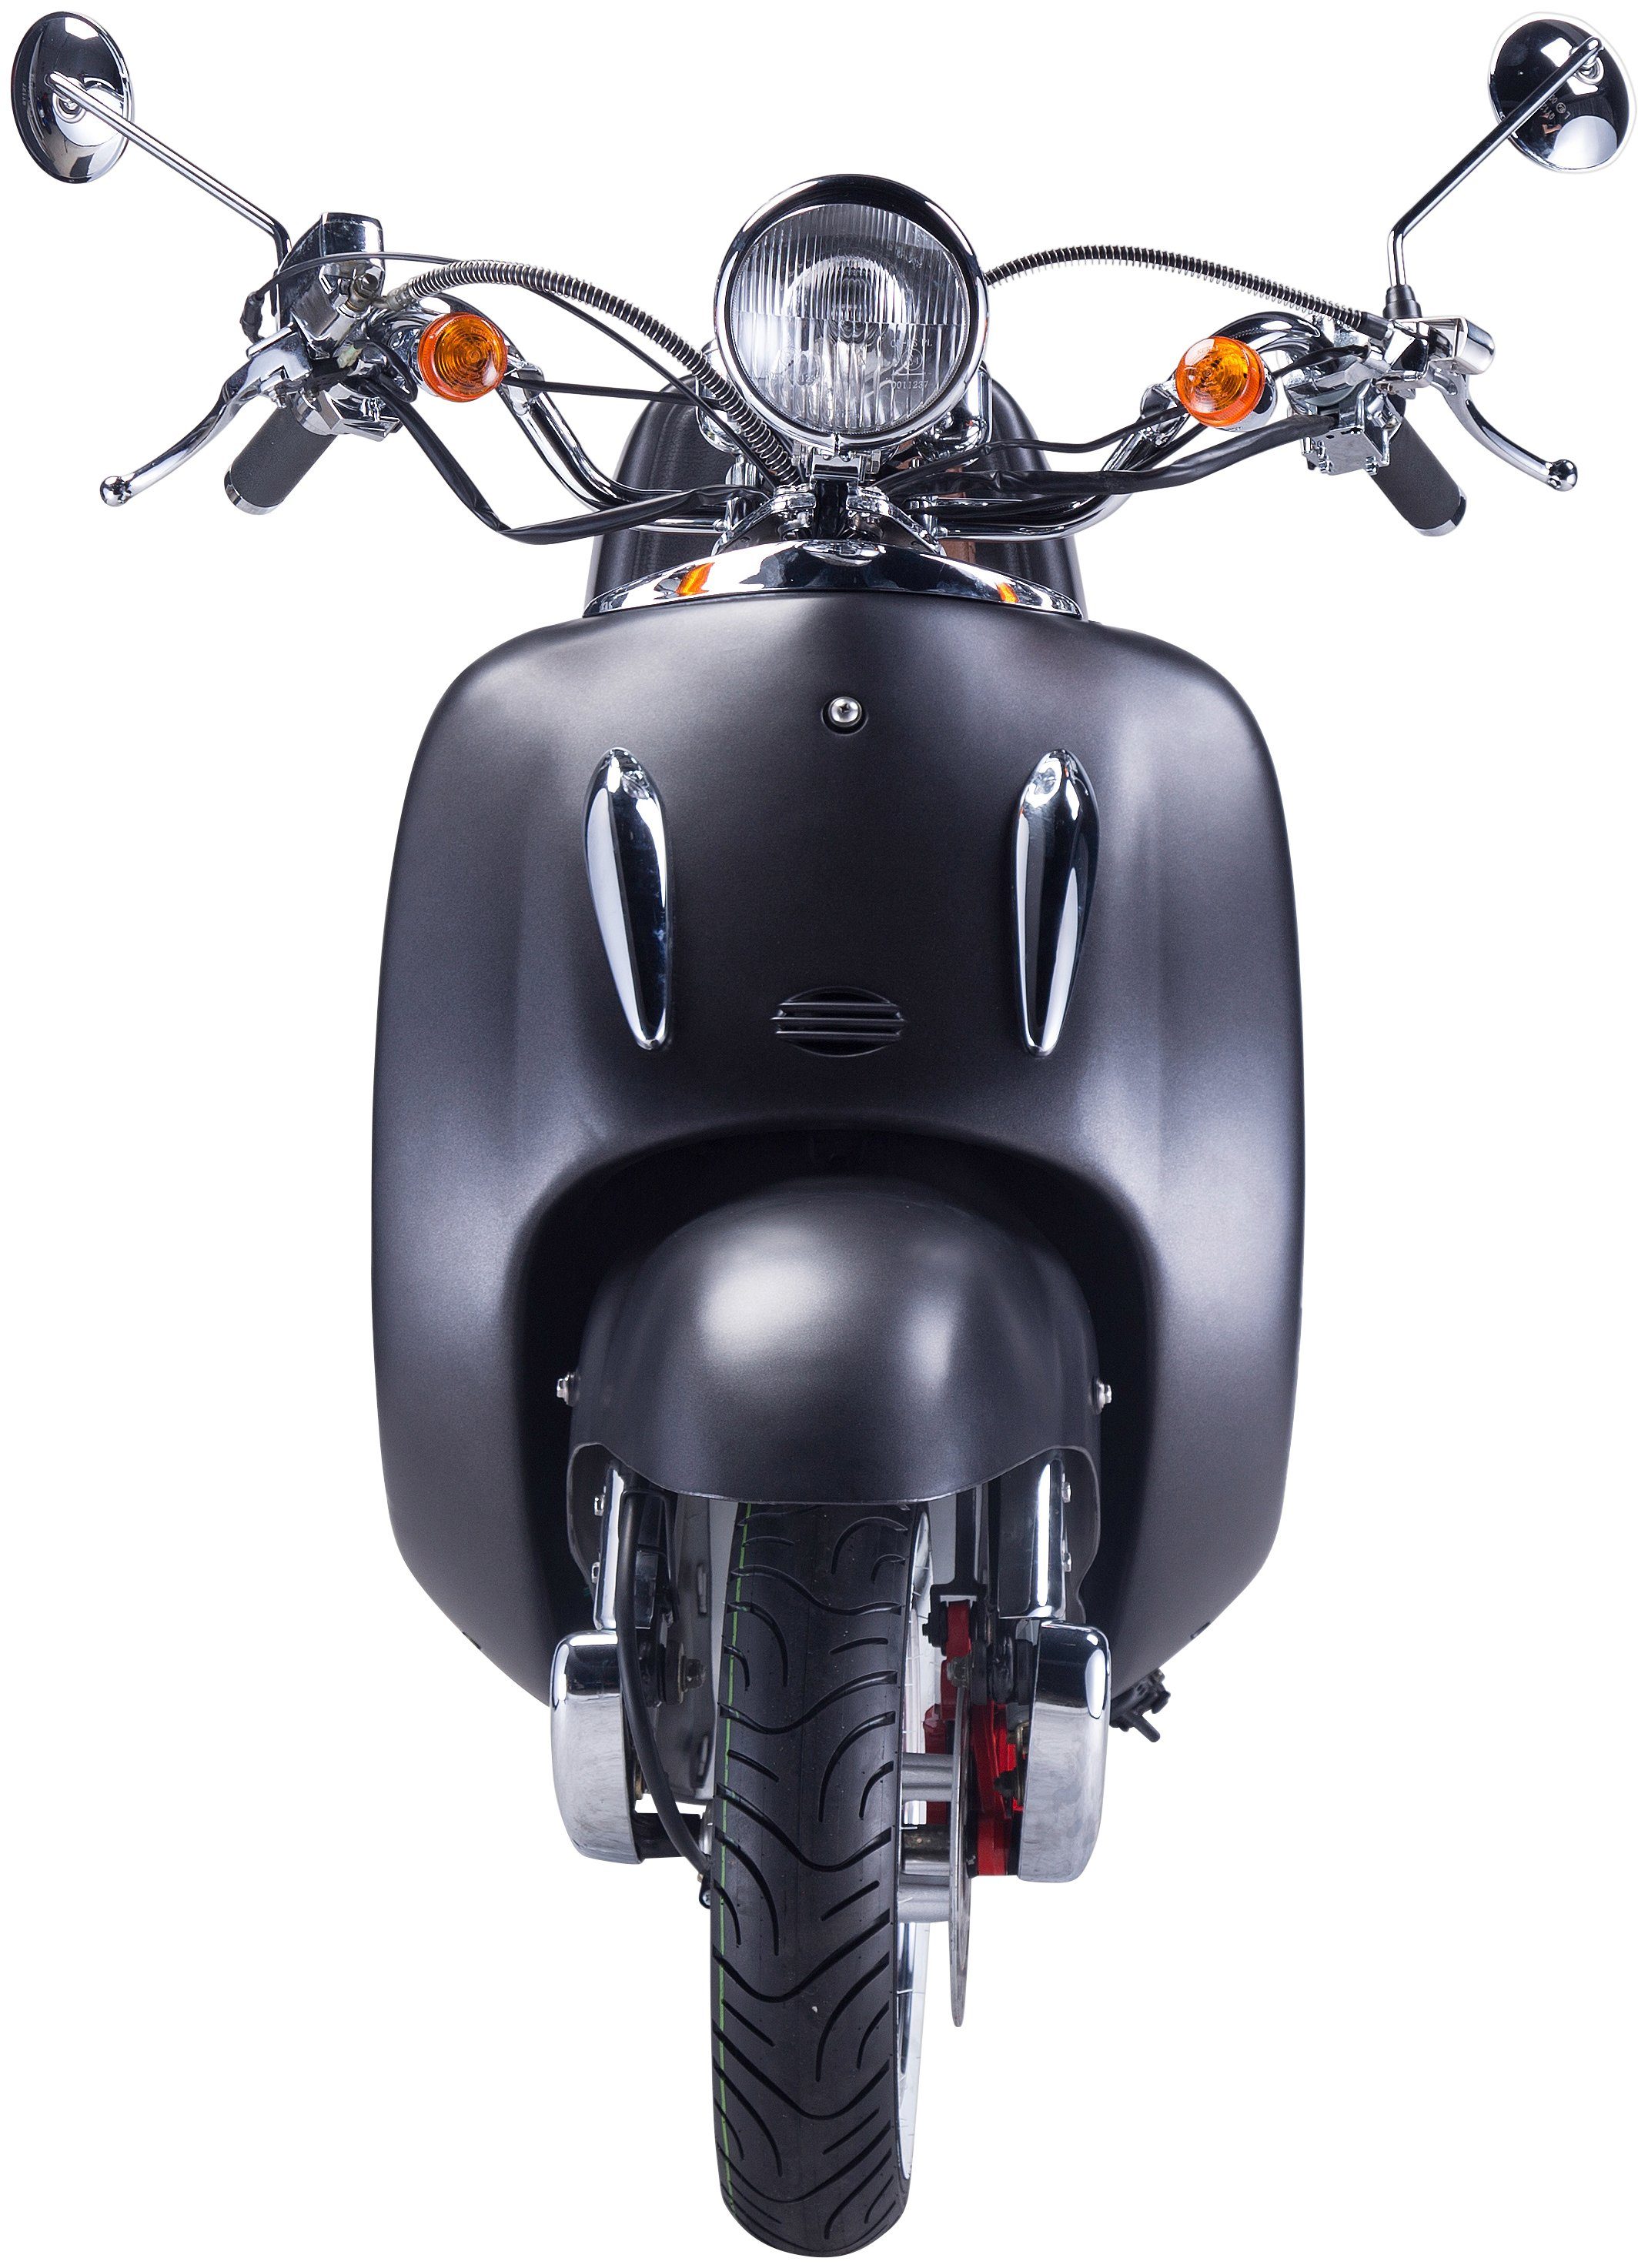 GT UNION Motorroller 125 85 km/h, Strada, Euro Topcase ccm, schwarz/silberfarben (Set), mit 5